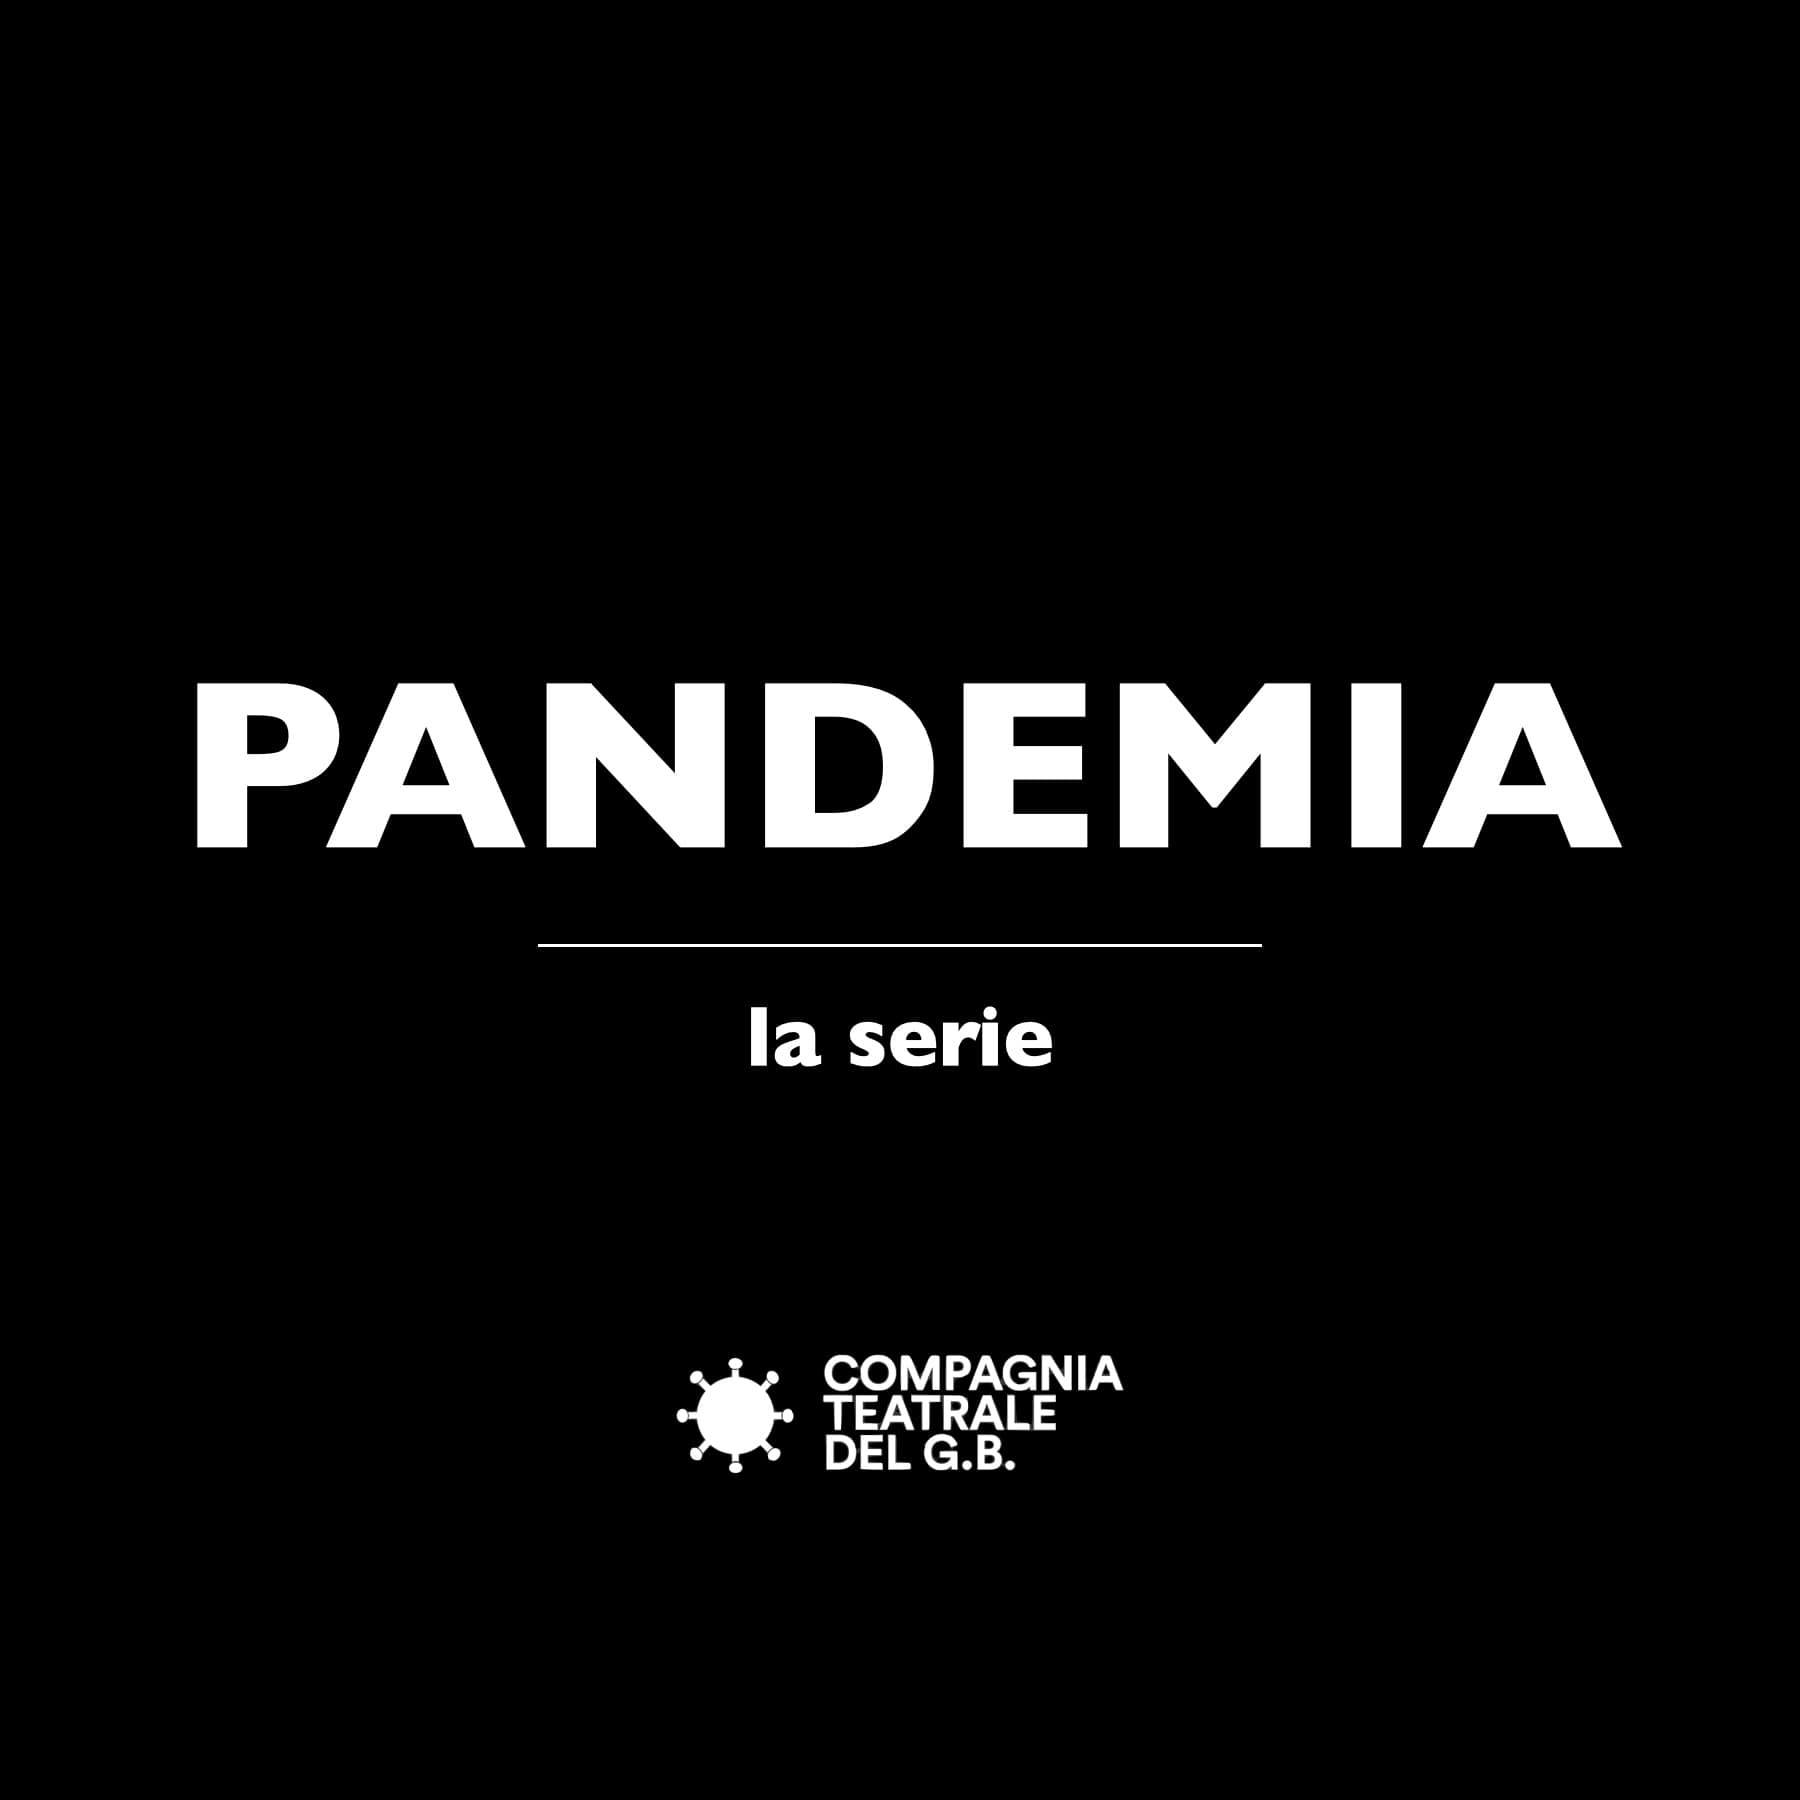 Dal liceo Grassi arriva sui social la web serie “Pandemia”